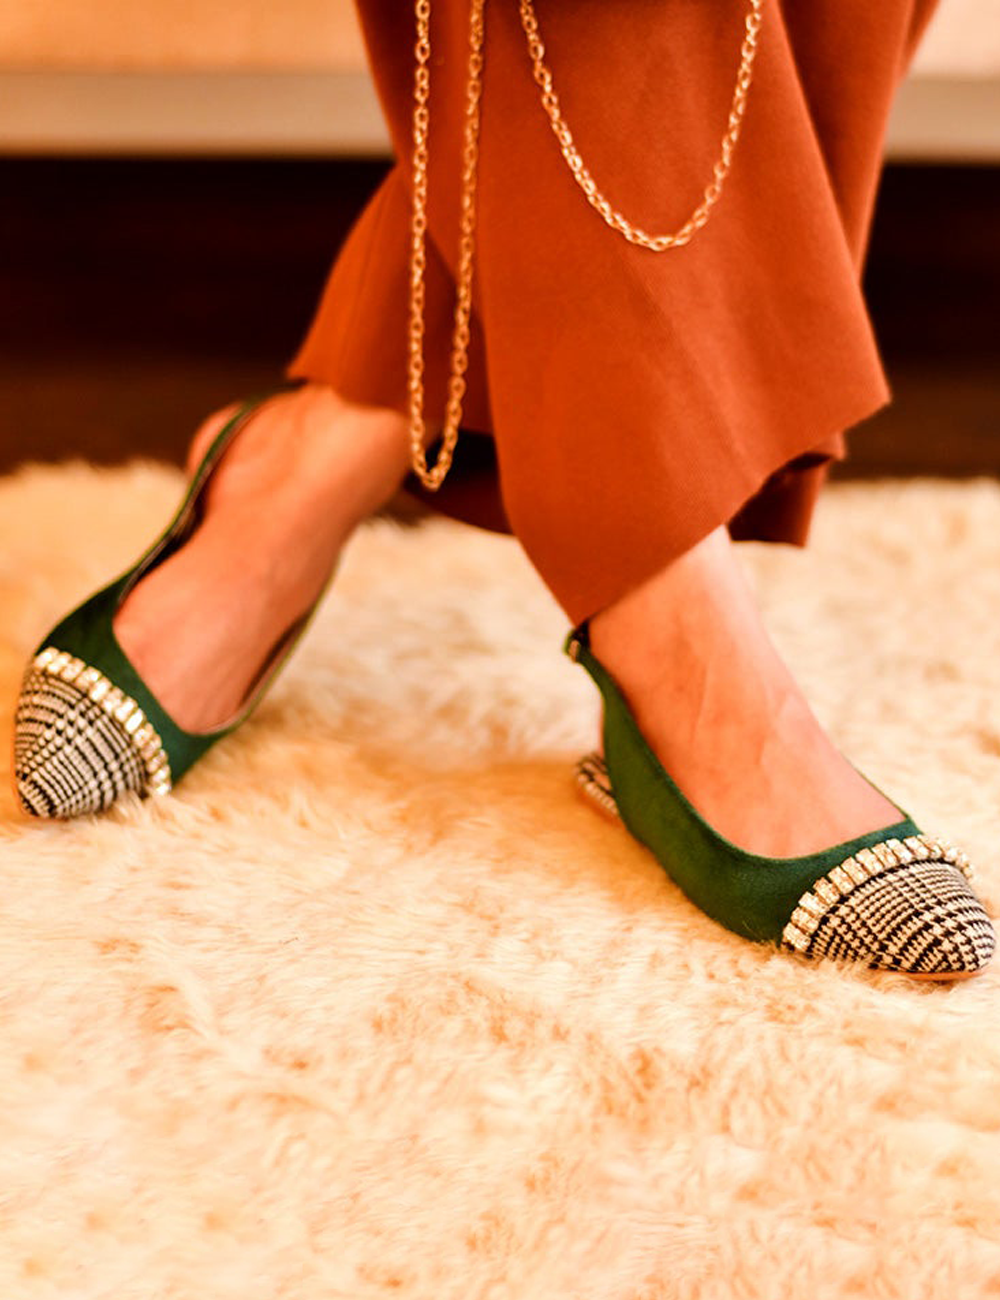 Green Bethki Velvet Sandals